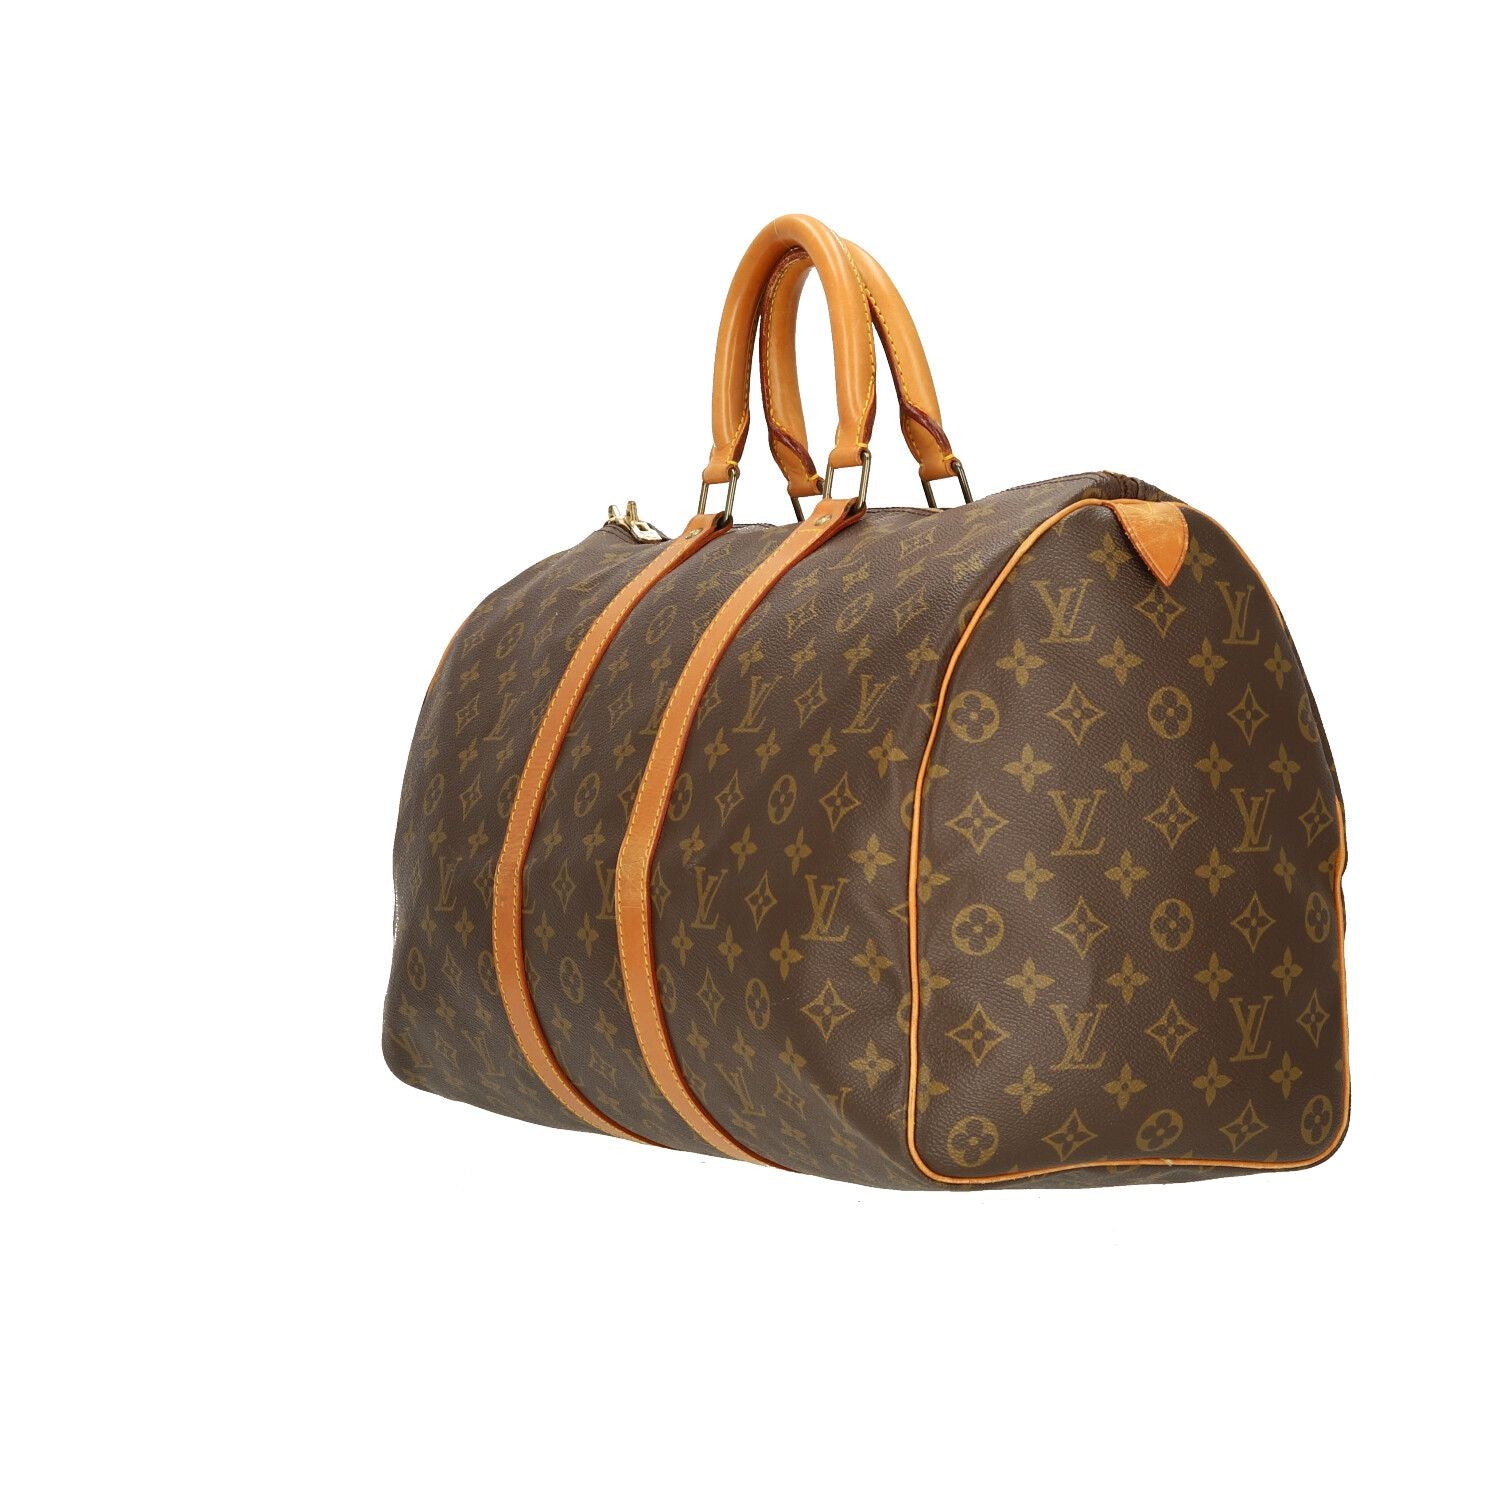 89 Louis Vuitton garment bag. Got it for $10 : r/ThriftStoreHauls